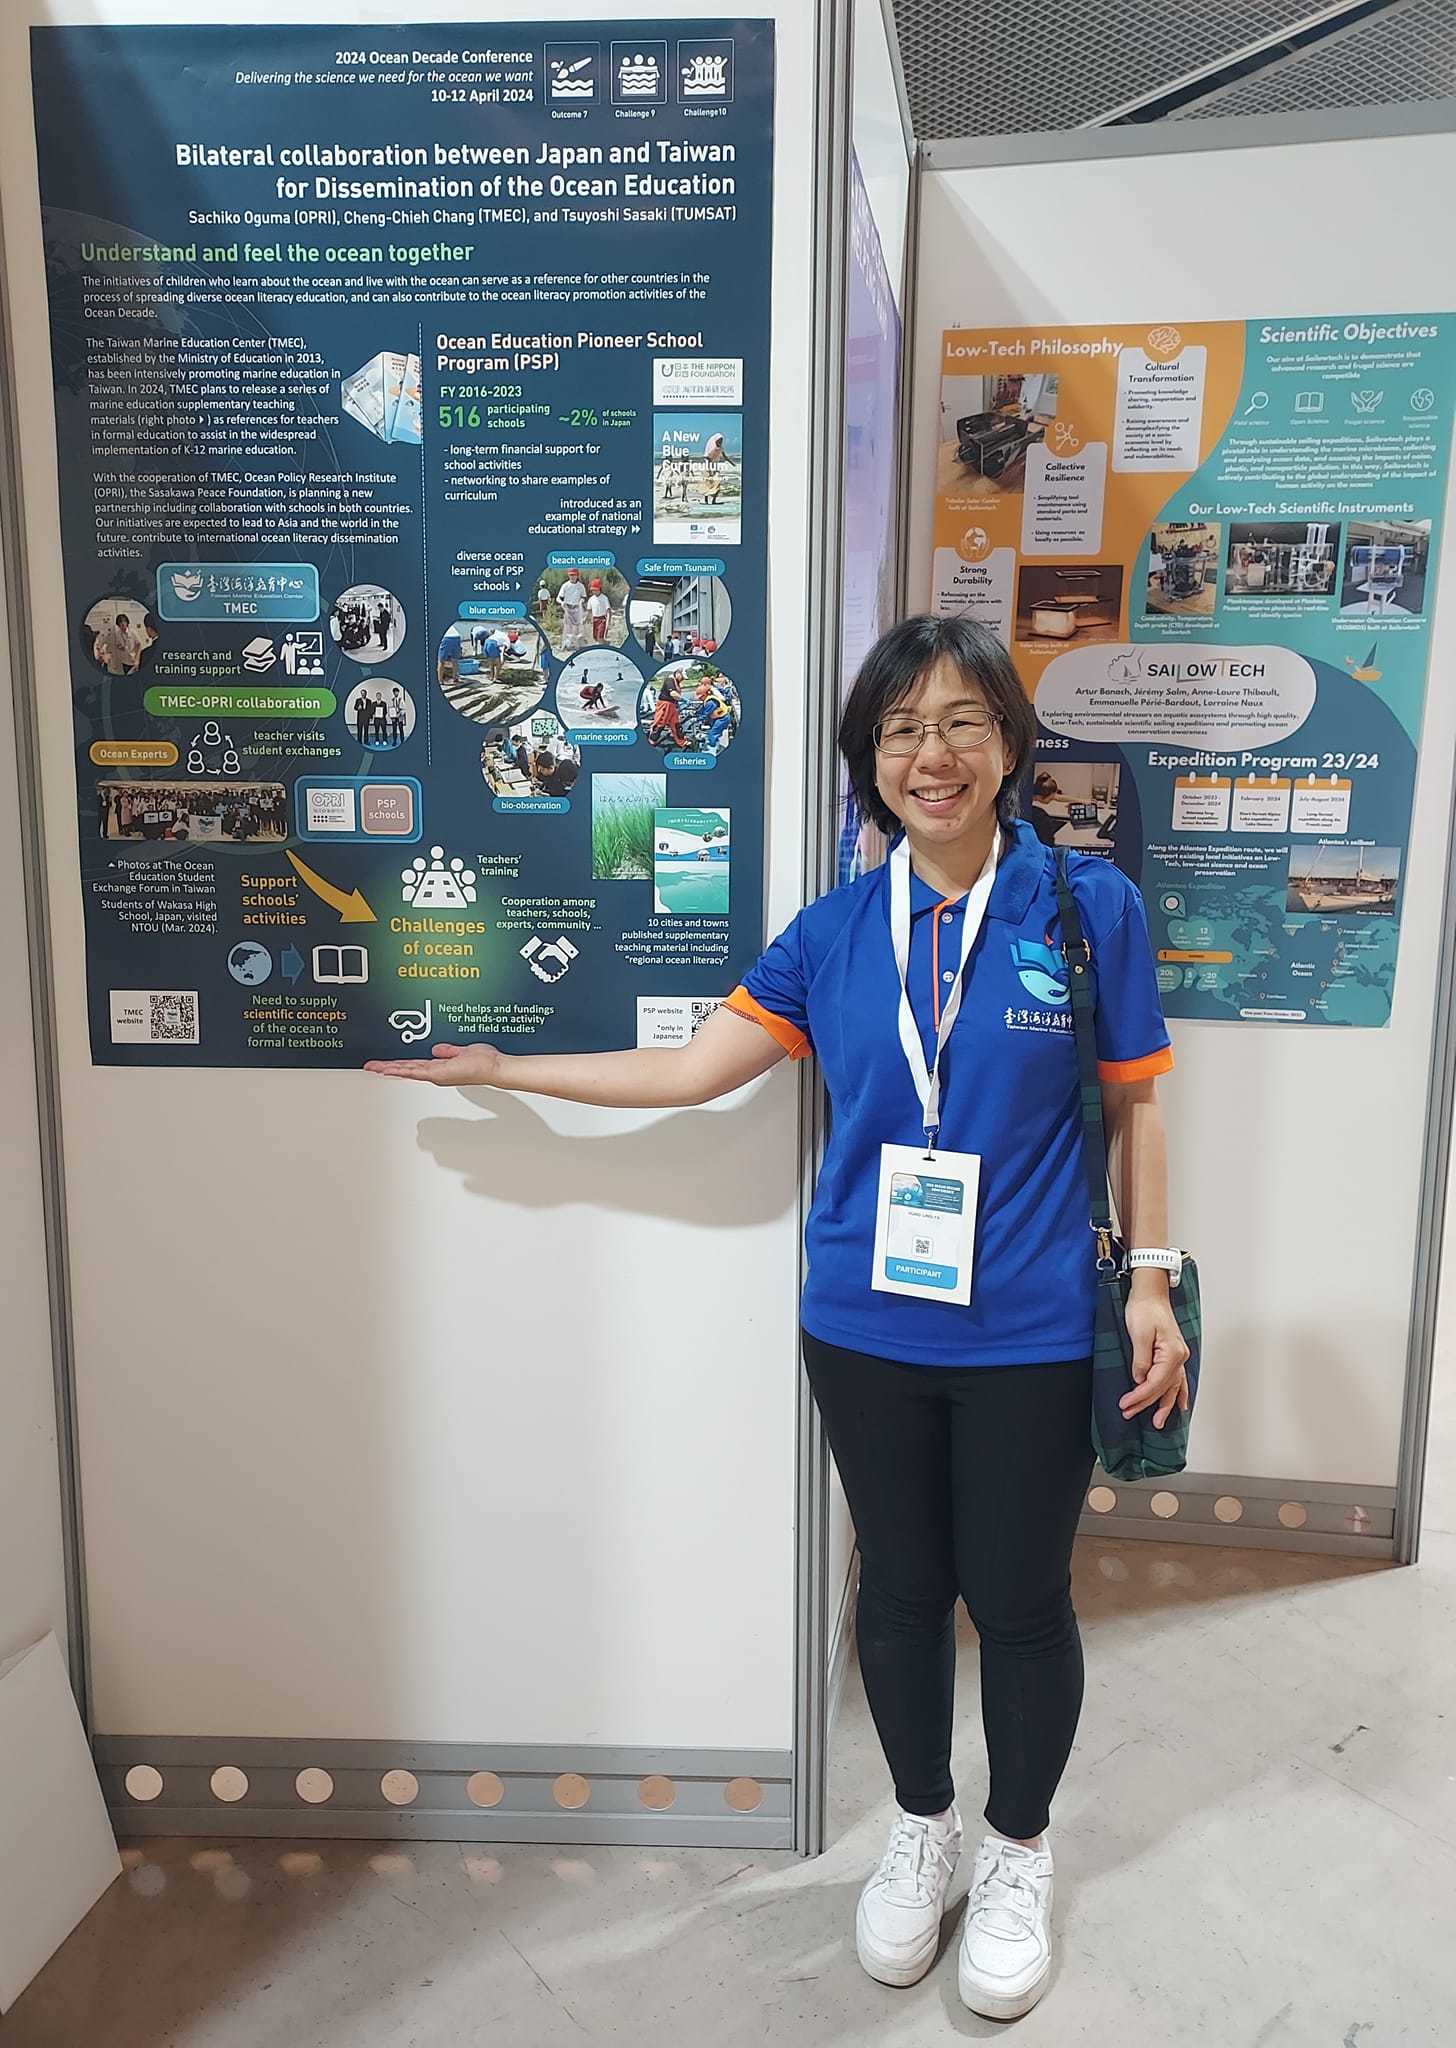 臺灣海洋教育中心與日本笹川平和財團海洋政策研究所(OPRI)共同展示海報發表未來將進行的合作模式